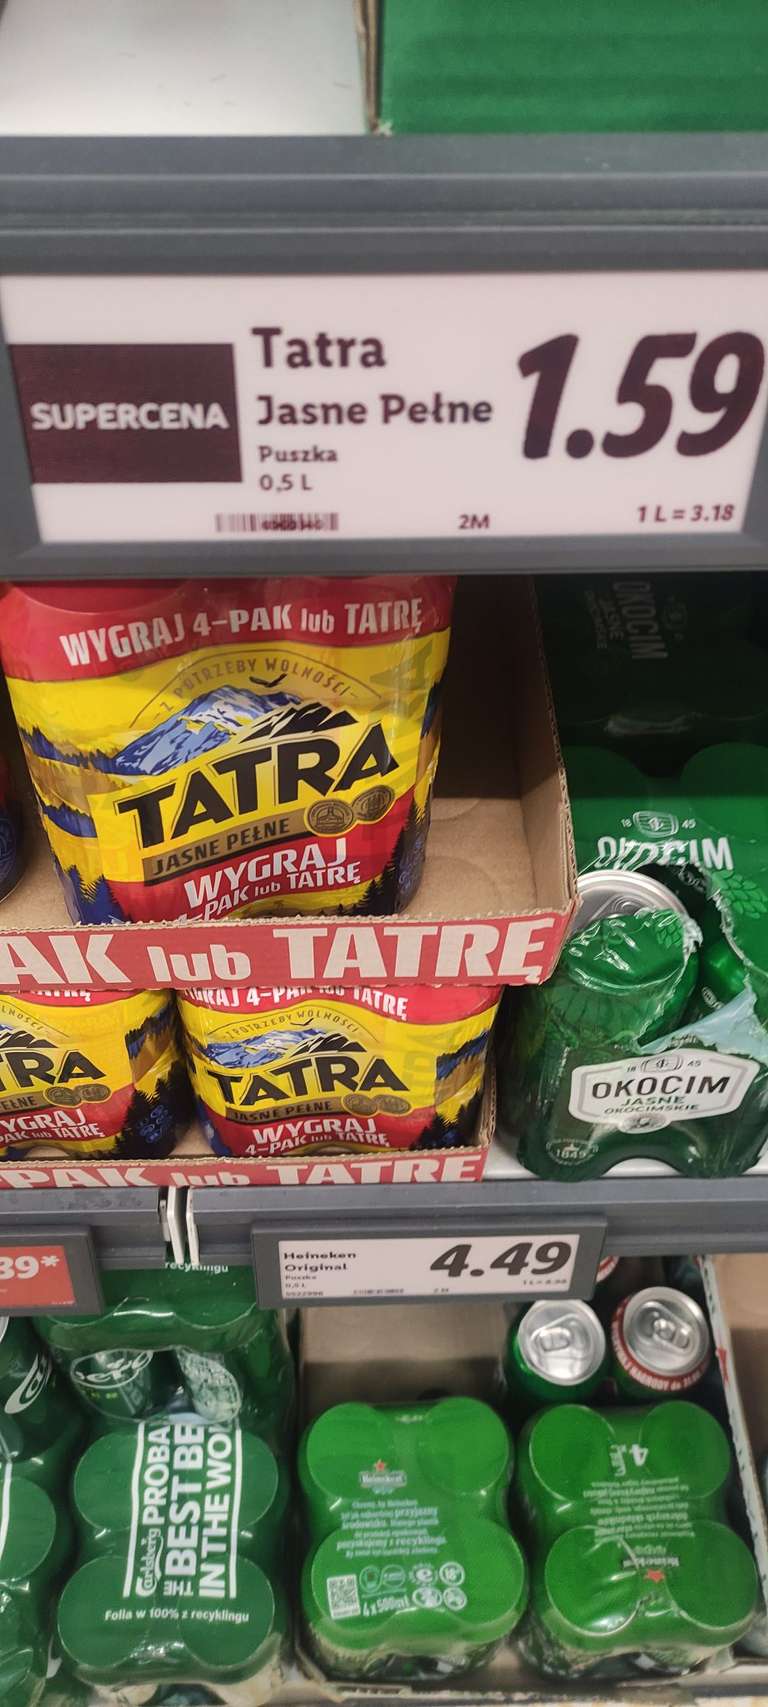 Tatra piwo puszka 0,5l 1,59zl Lidl